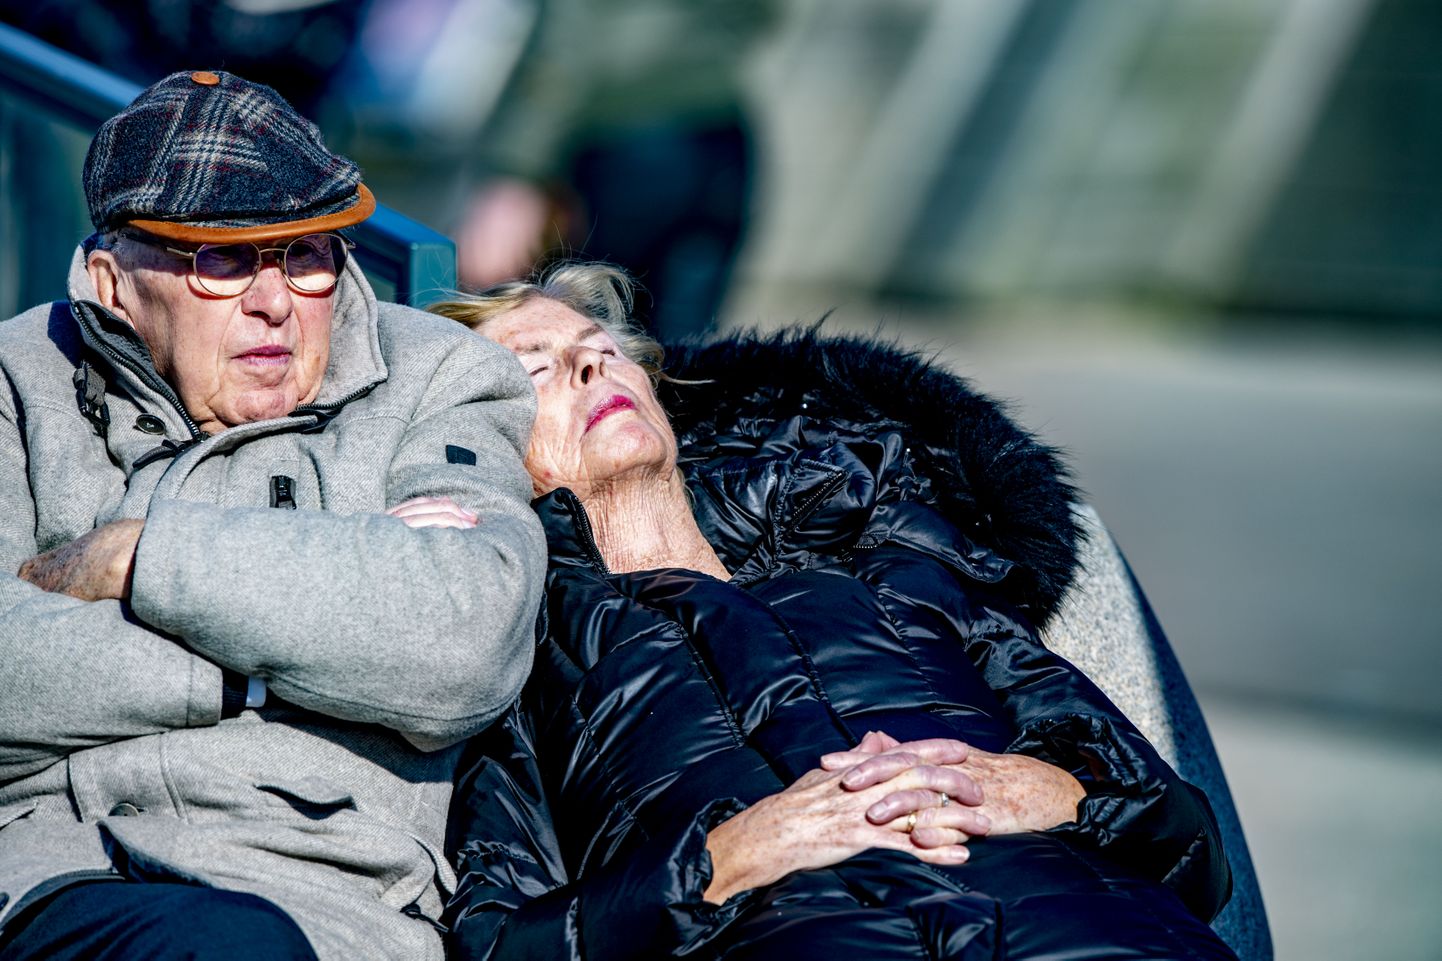 Пожилая супружеская пара в Швеции наслаждается весеннем солнцем в разгар коронакризиса